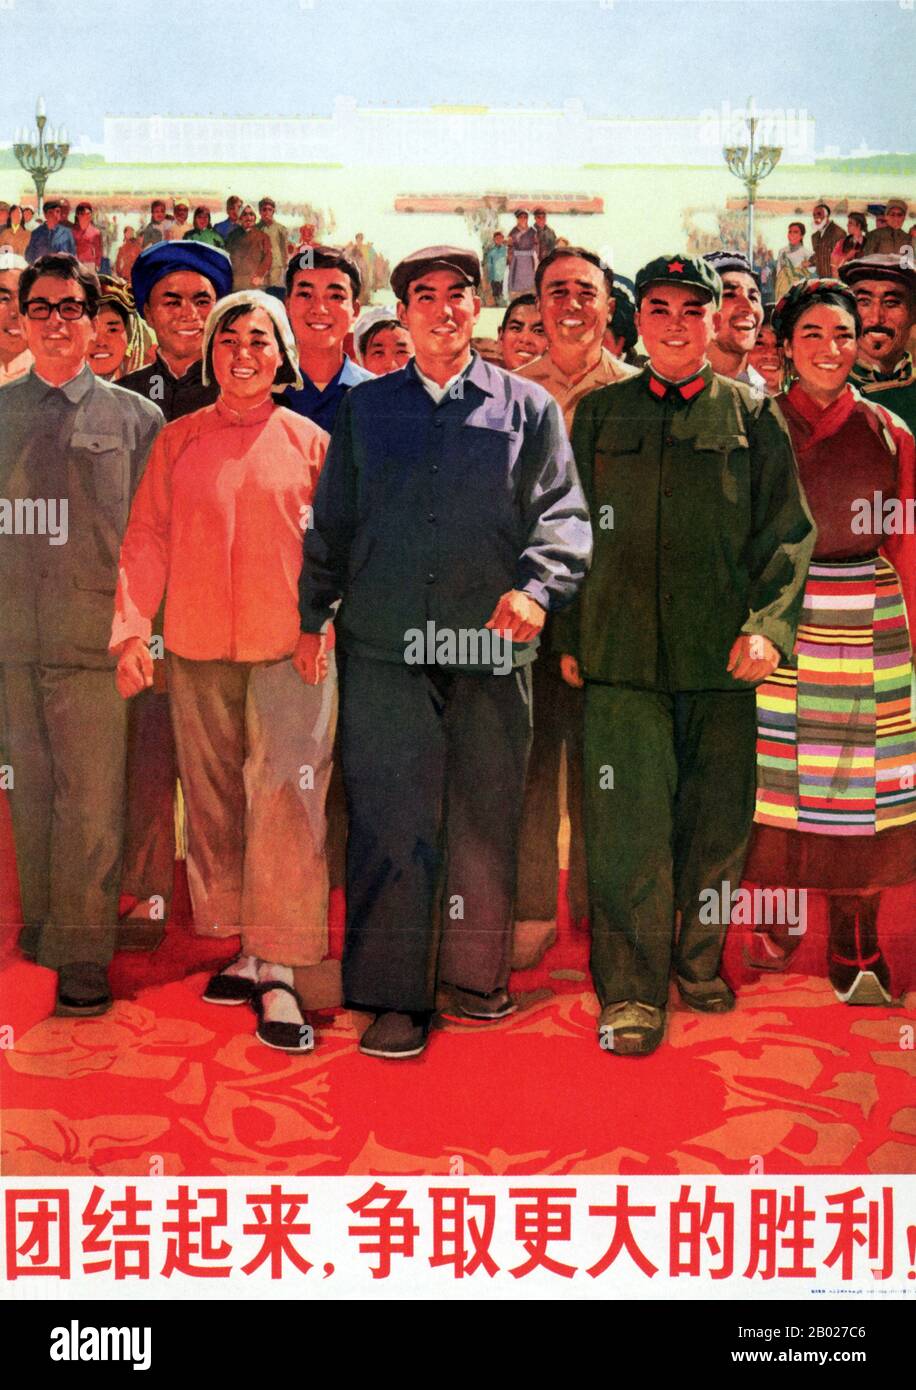 En 1973, la China comunista estaba siete años después de la Revolución Cultural, que había comenzado en mayo de 1966. La "fase Lin Biao" ya había terminado, Lin había muerto en un accidente aéreo sobre Mongolia, al tiempo que aparentemente intentaba huir a la Unión Soviética. Sin embargo, la Revolución Cultural no terminaría definitivamente hasta la muerte de Mao en 1976. La 'victoria aún mayor' a la que se refiere este cartel Marca el ascenso de la 'pandilla De Los Cuatro' incluyendo Wang Hongwen, Zhang Chunqiao, Yao Wenyuan y especialmente la esposa de Mao, Jiang Qing. La principal campaña iniciada por este grupo ultraflexista en 1973 tenía como objetivo poner fin a Zhou Foto de stock